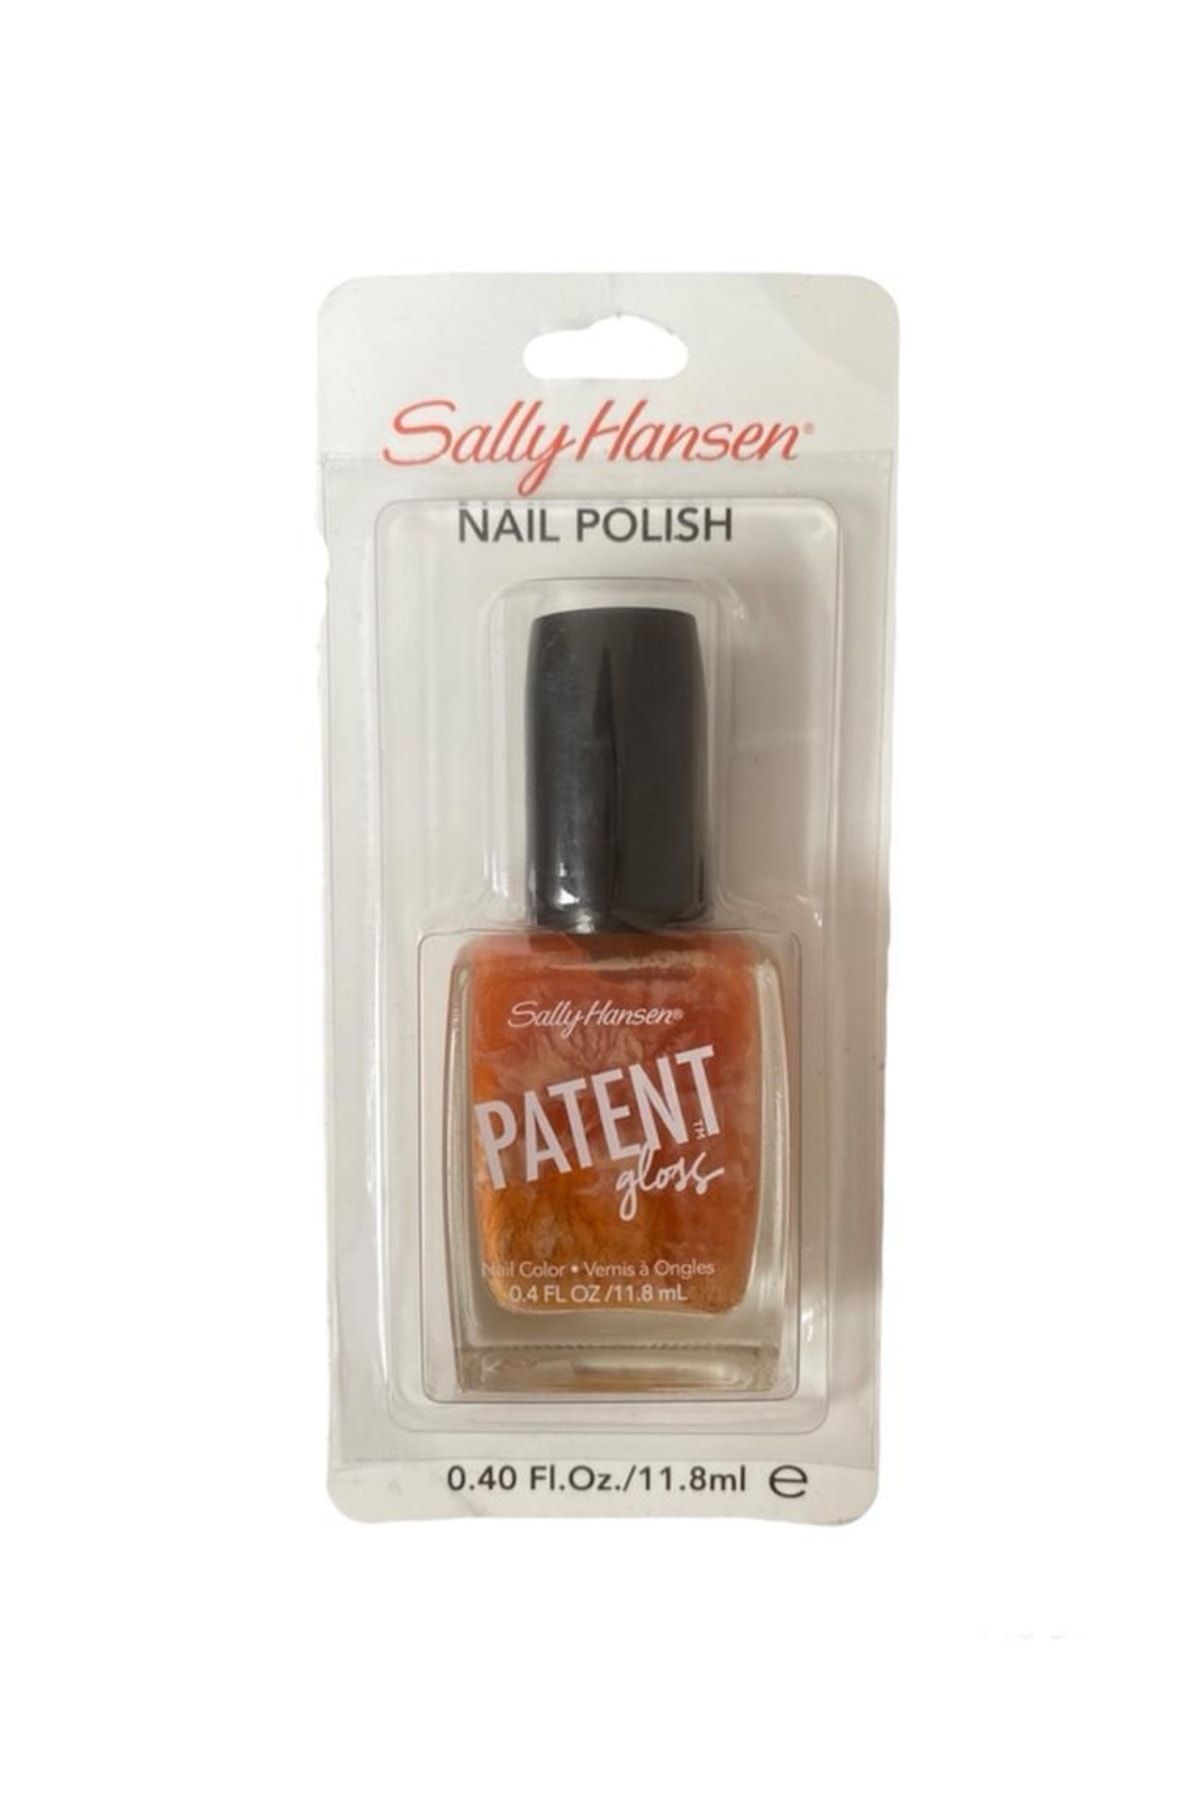 Sally Hansen Special Effects Patent Gloss Nail Polish, Tırnak Cilası Parlatıcı Etkili